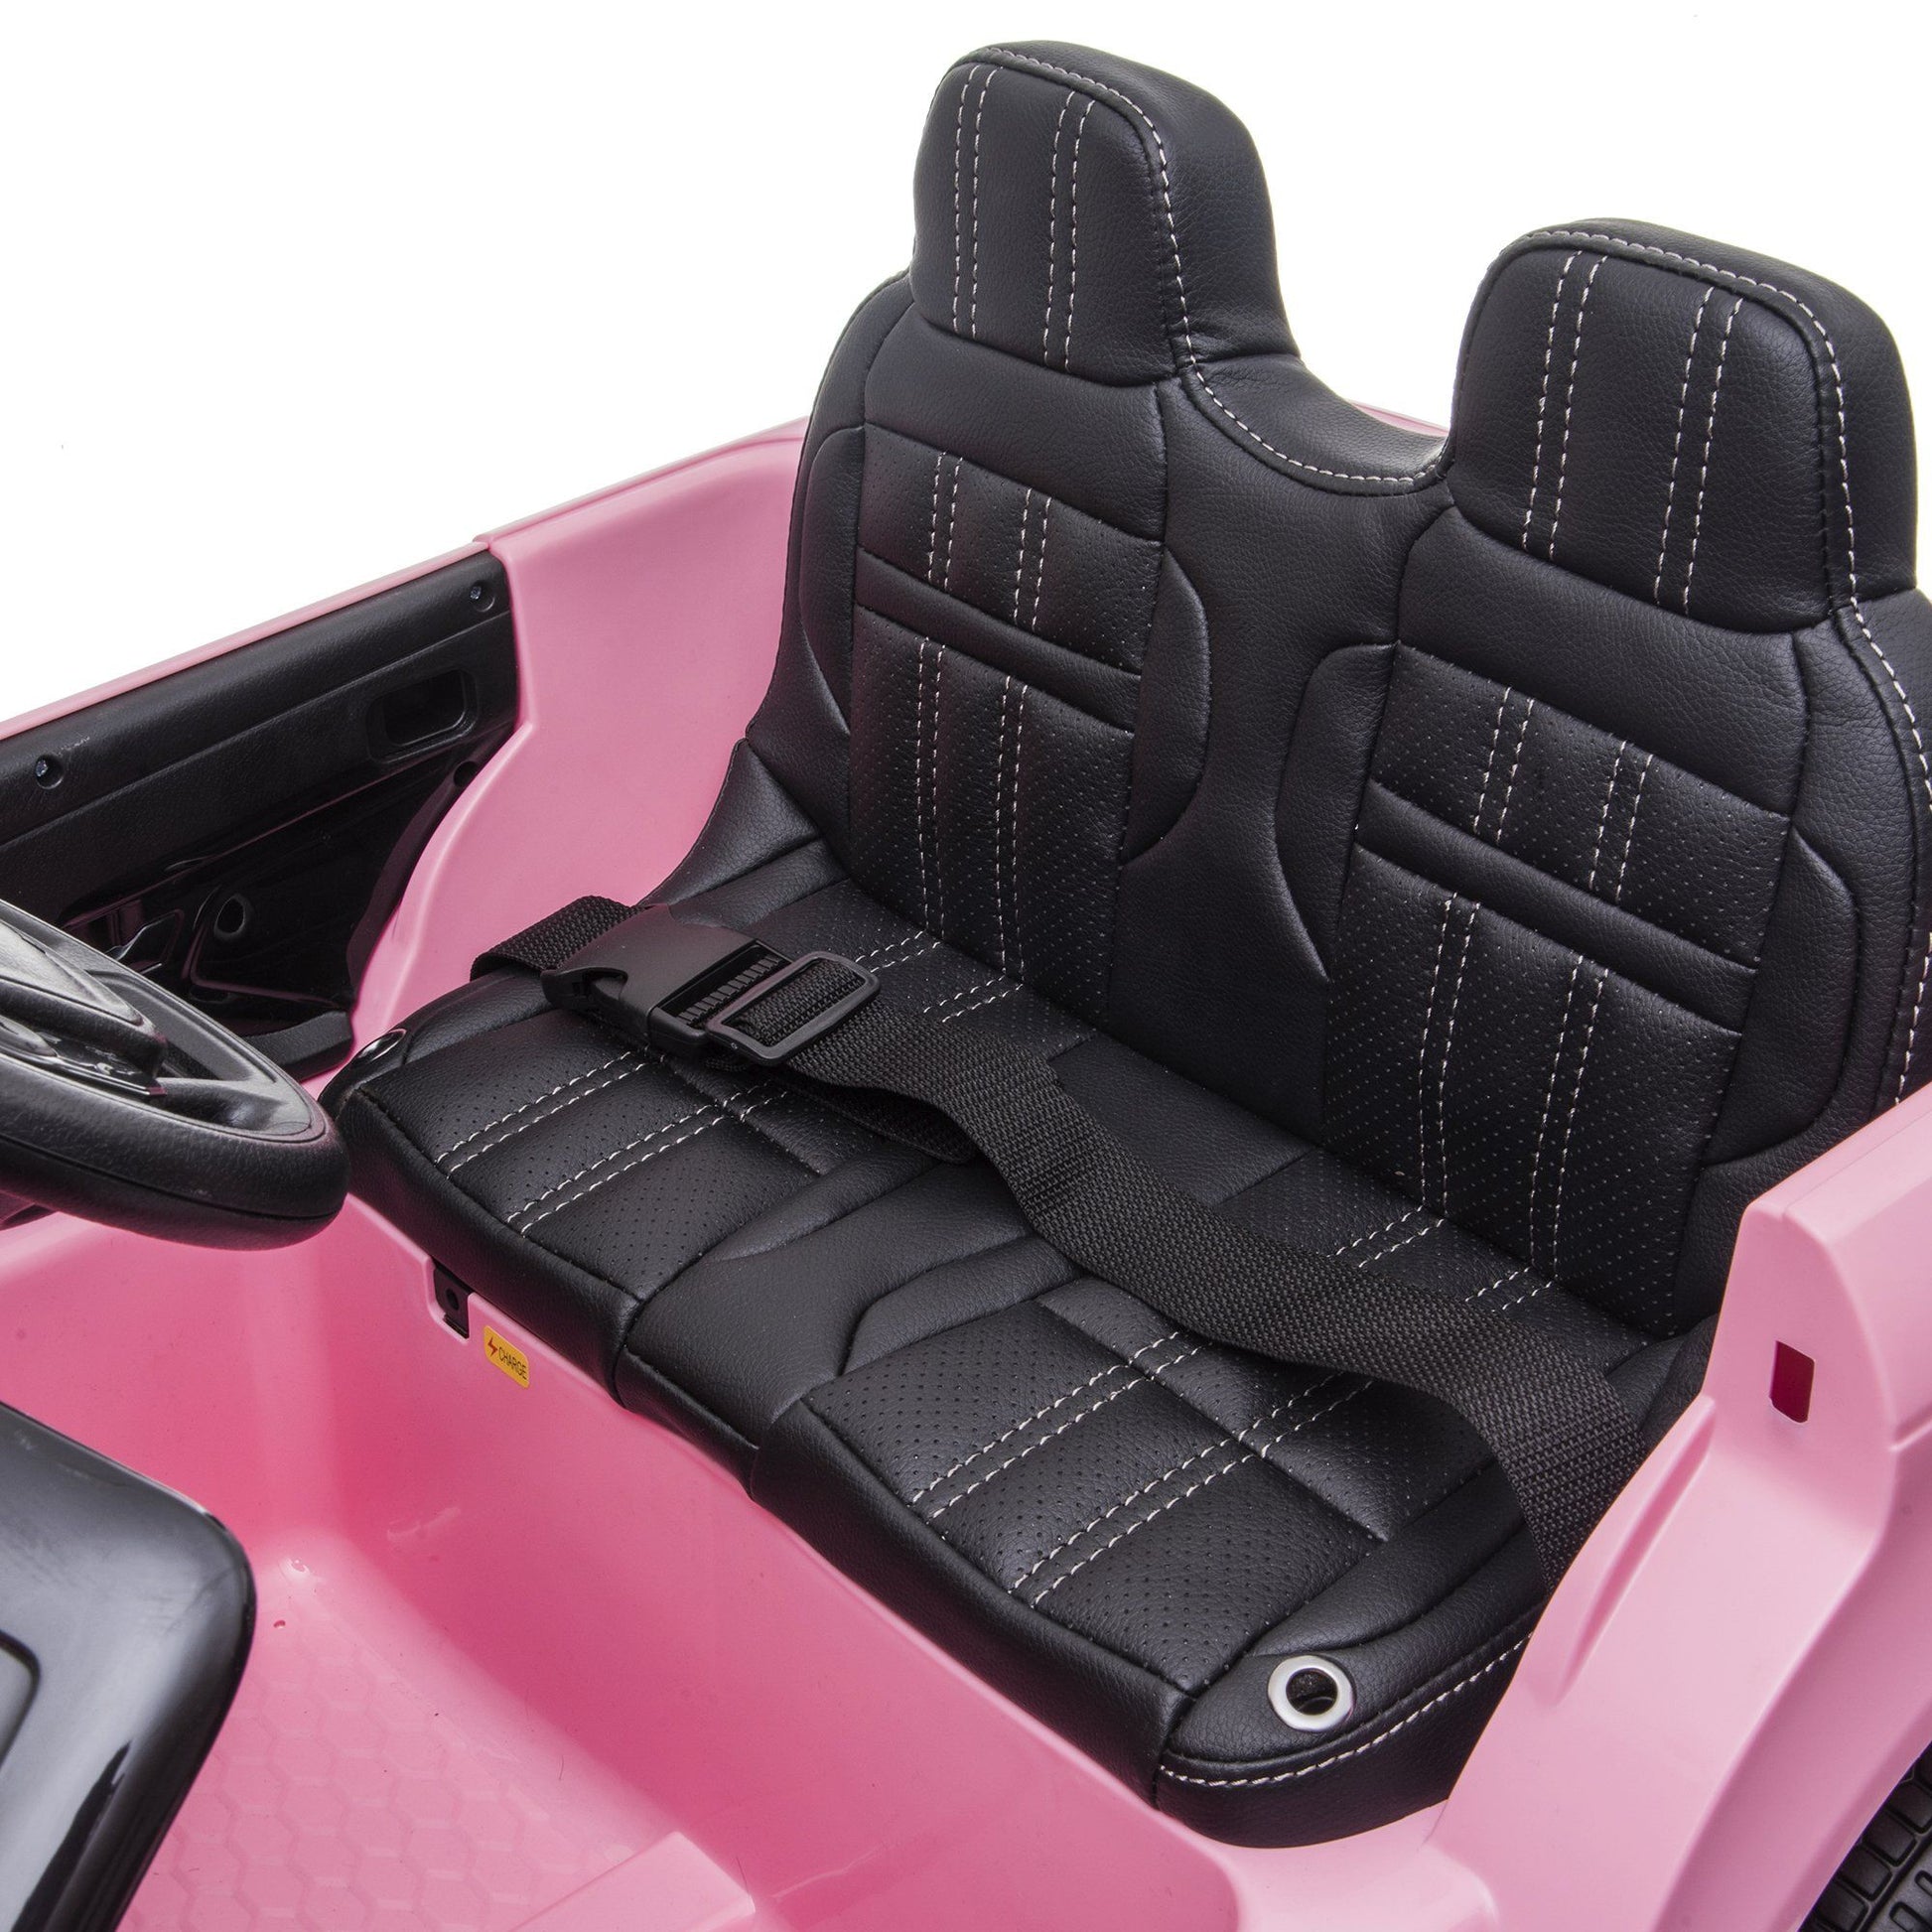 Freddo Toys | Range Rover Evoque 12V 1 Seater Ride on Car for Kids